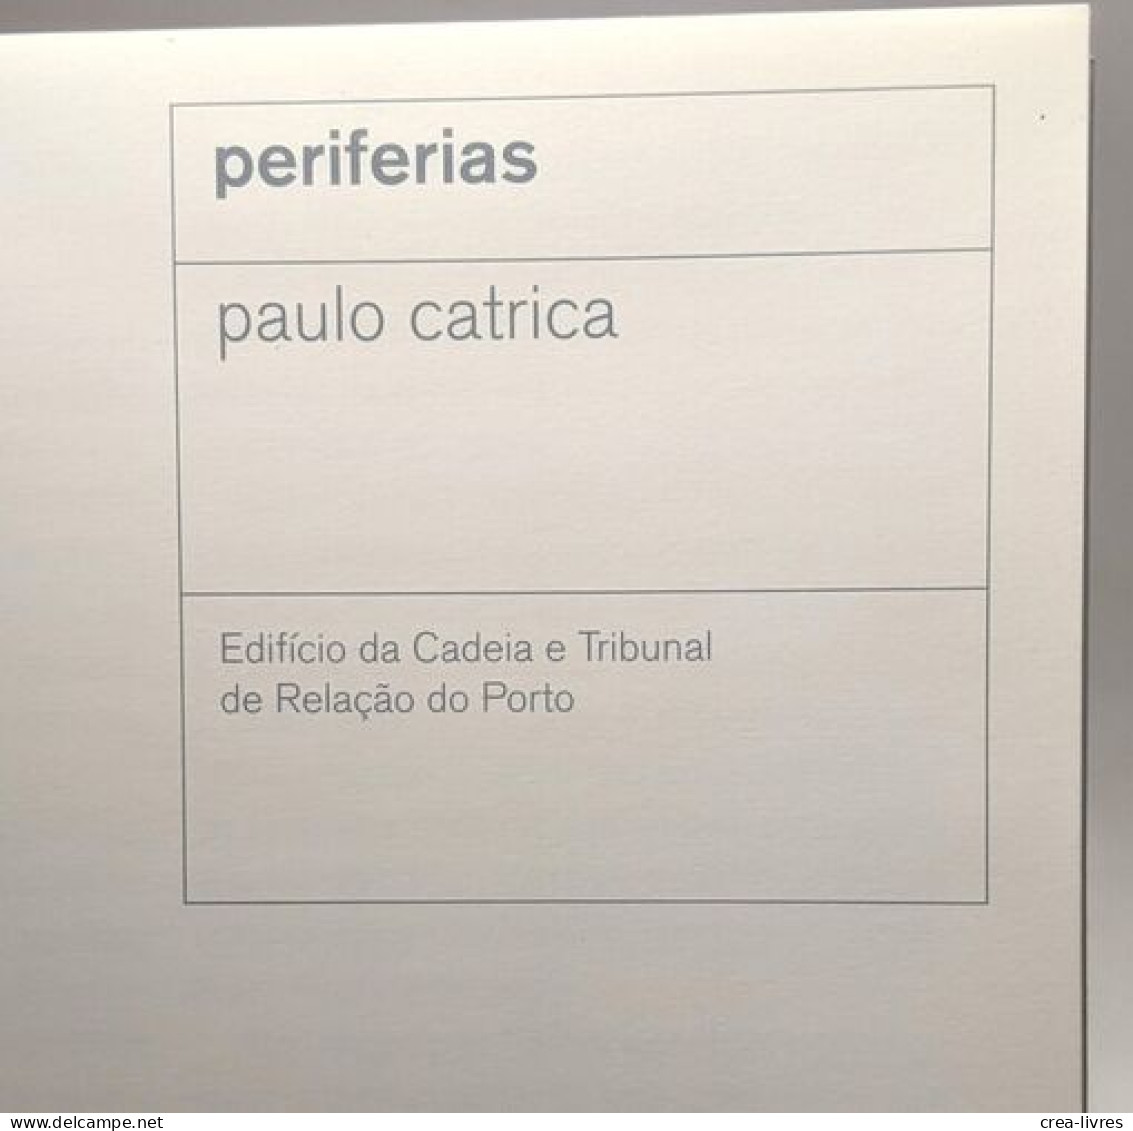 Periferias - Edificio Da Cadeia E Tribunal De Relaçao Do Porto - Art